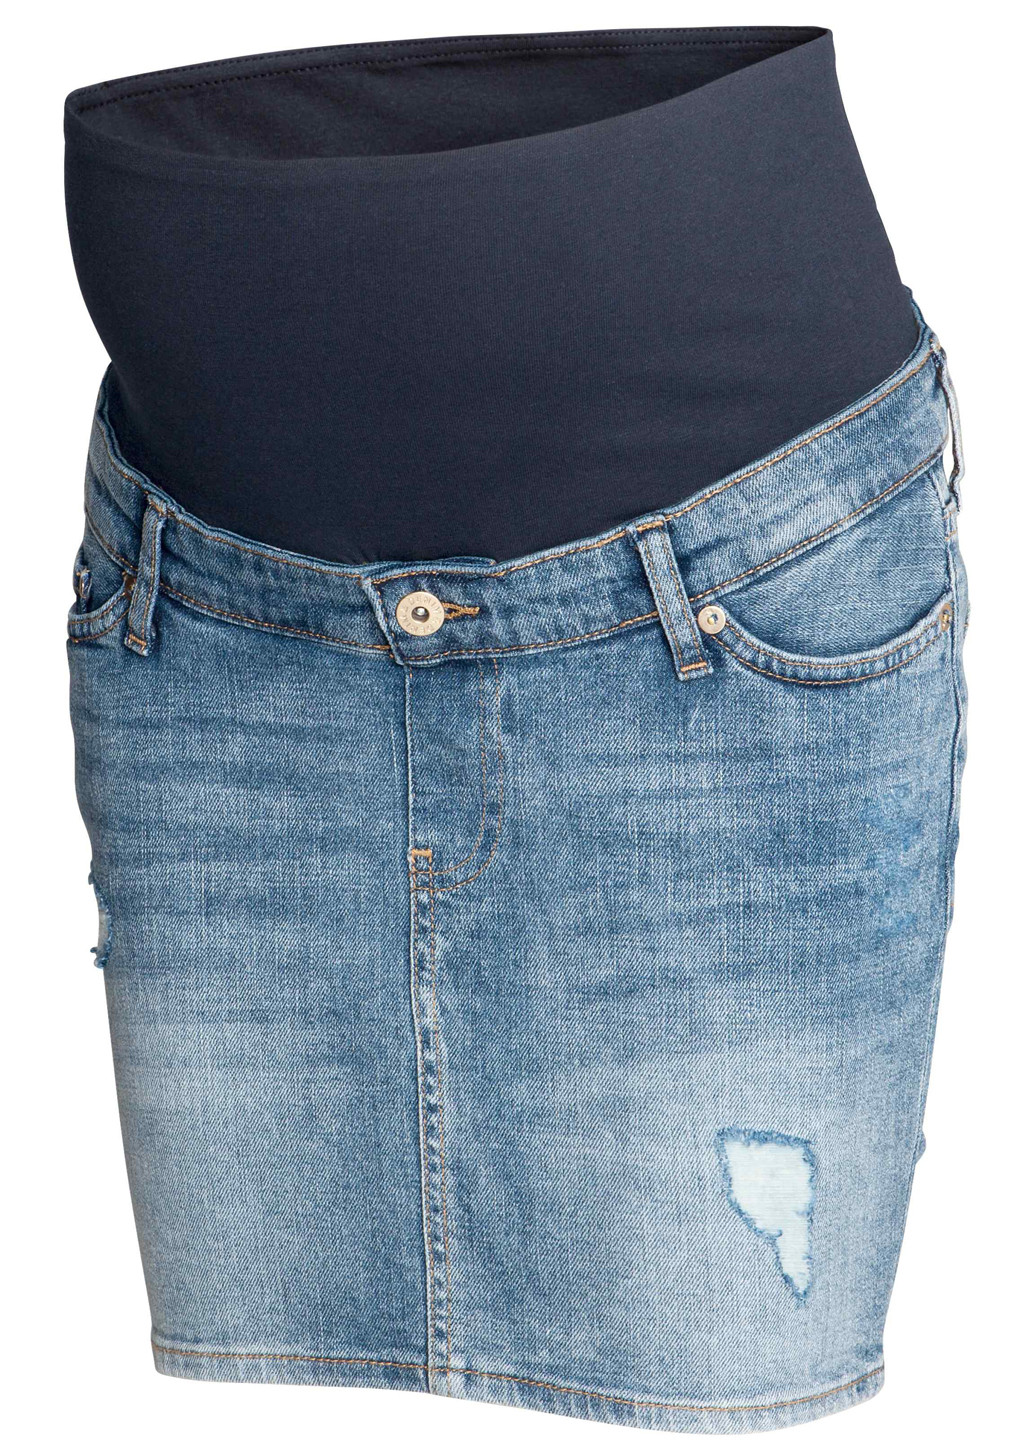 Спідниця для вагітних H&M олівець однотонна синя джинсова